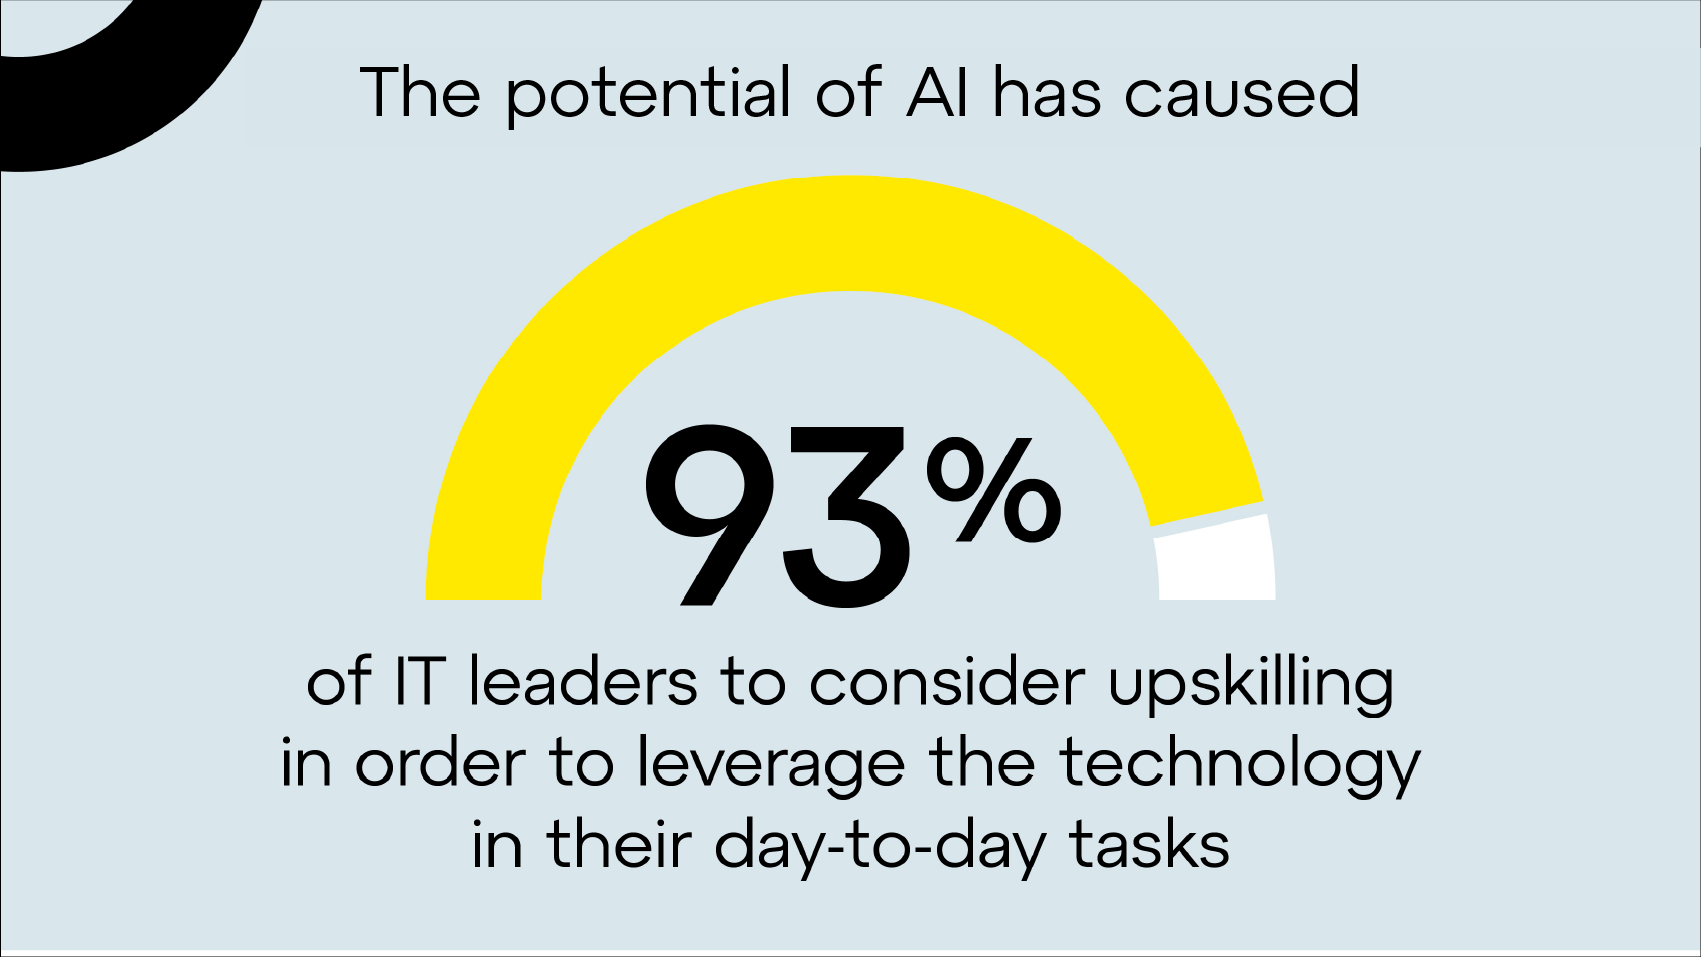 Das Potenzial von KI hat 93 % der IT-Führungskräfte dazu veranlasst, sich weiterzubilden, um die Technologie bei täglichen Aufgaben nutzen zu können.